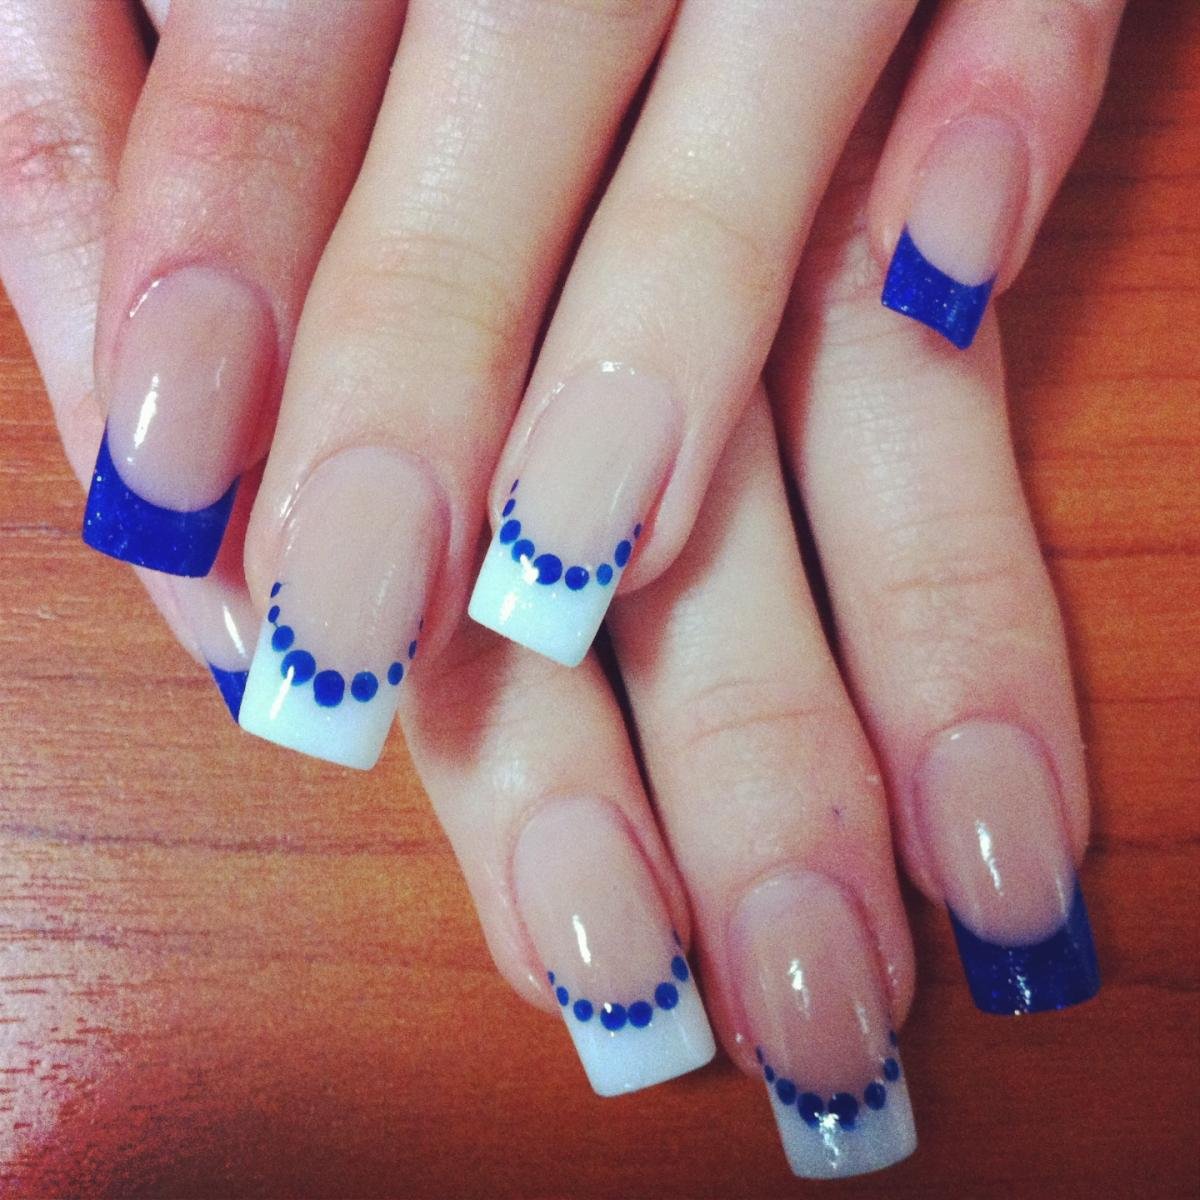 Френч молочный синий. Синий френч на ногтях. Маникюр синий френч. Голубой френч на квадратных ногтях. Французский маникюр синий с белым.